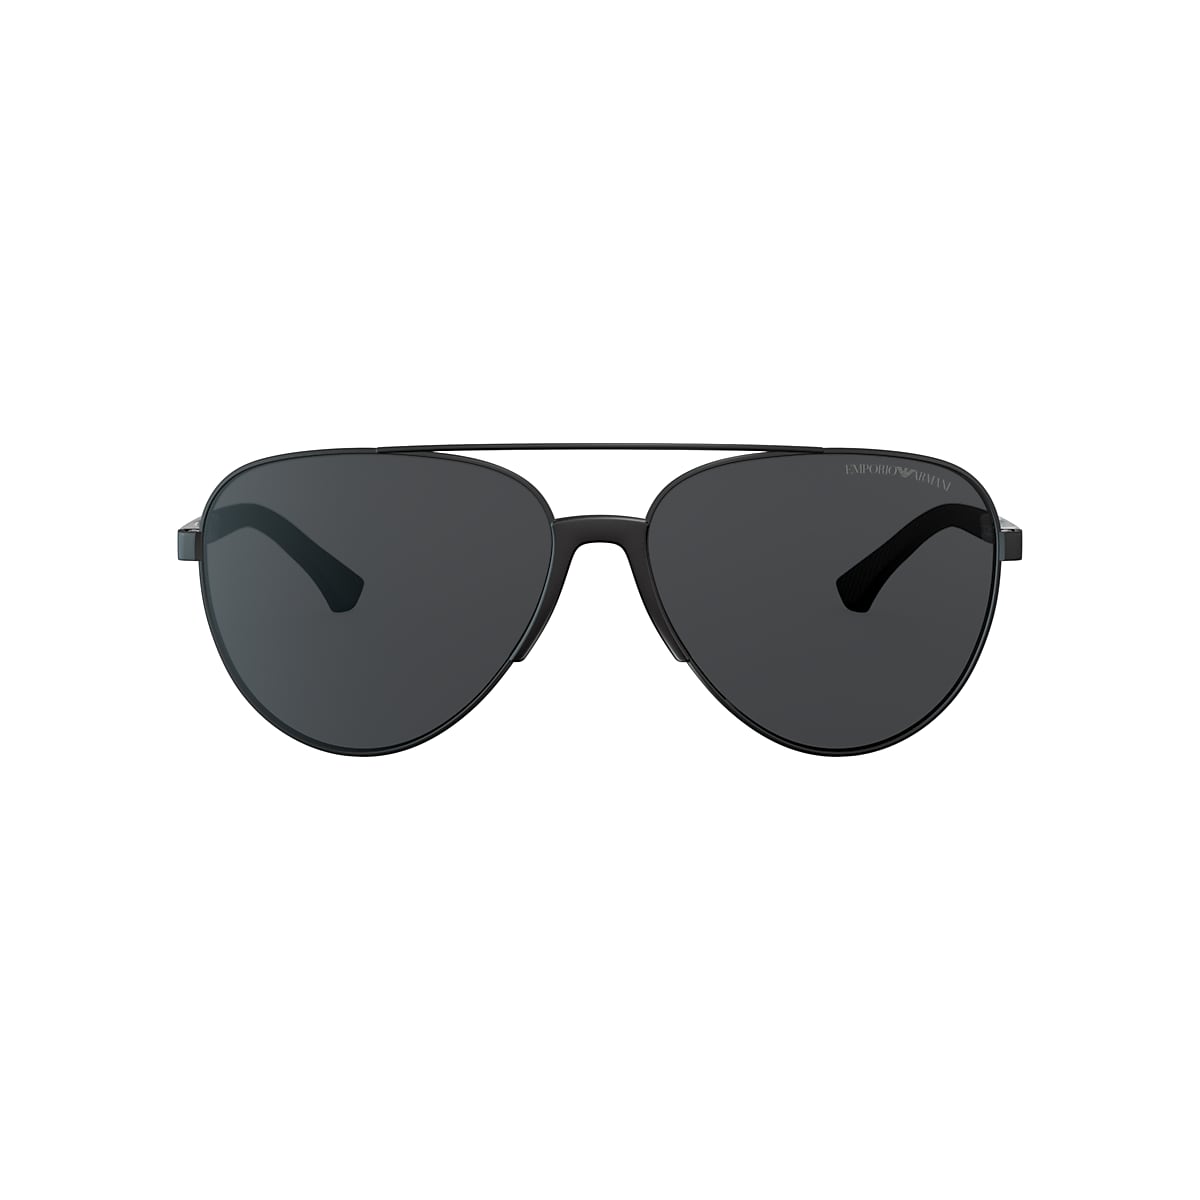 Emporio Armani EA2059 61 Grey & Matte Black Sunglasses | Sunglass Hut  United Kingdom